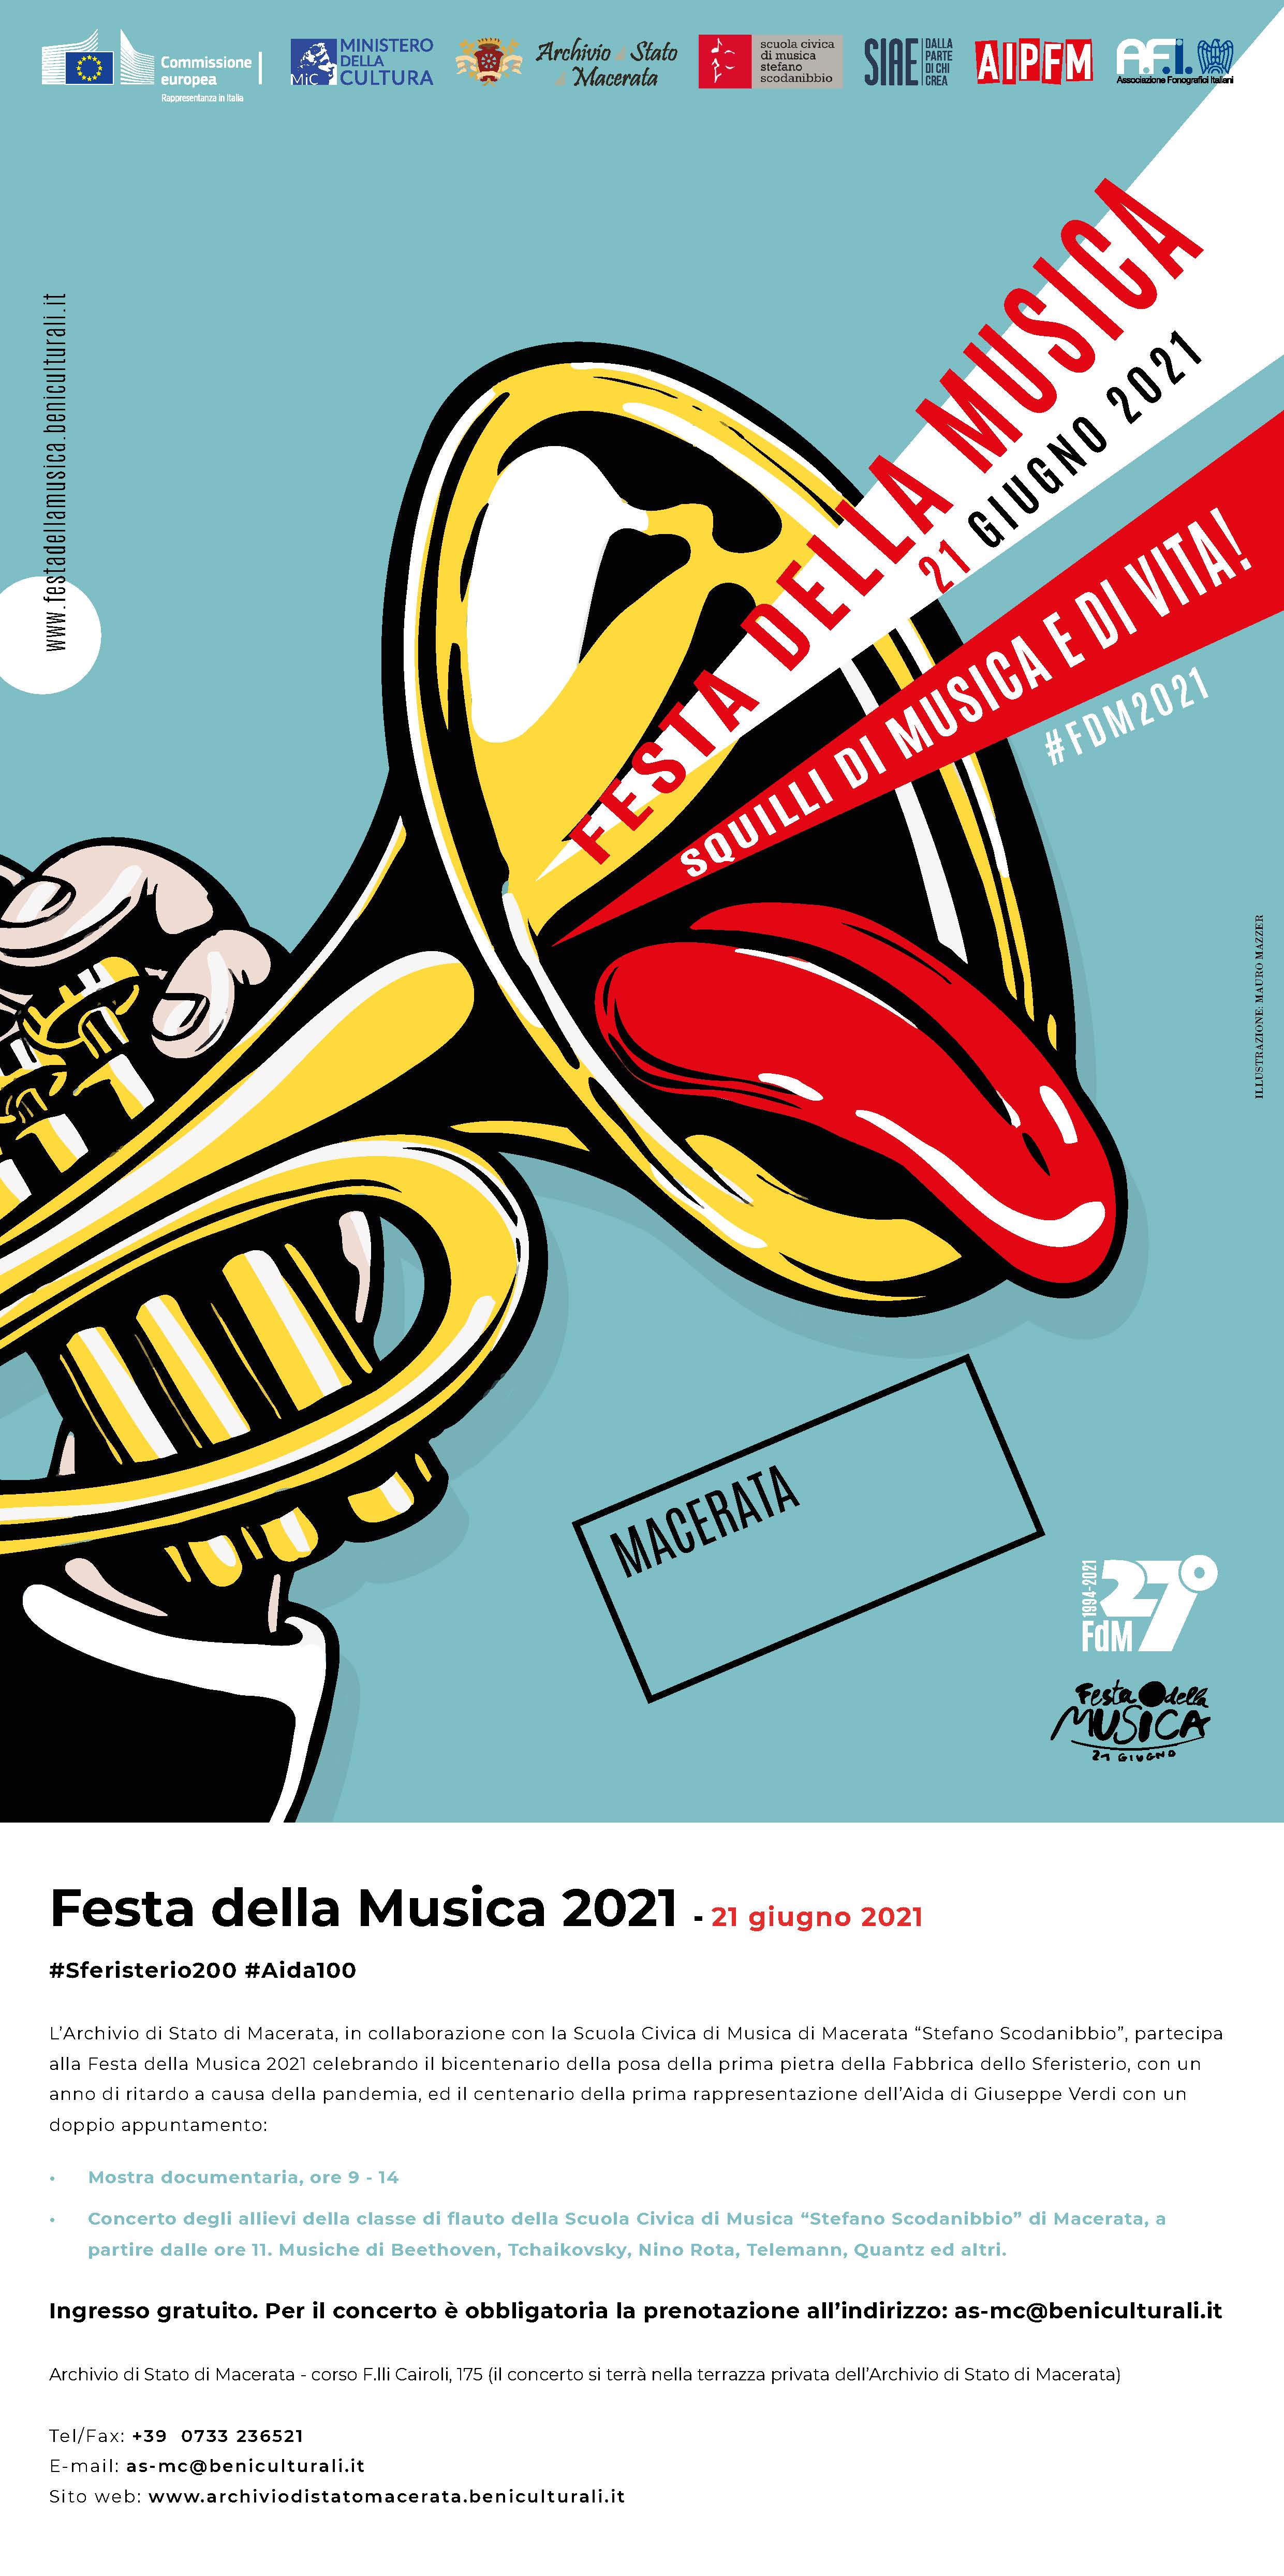 FESTA DELLA MUSICA 21 GIUGNO 2021 – Concerto e mostra fotografico-documentaria presso l’Archivio di Stato di Macerata